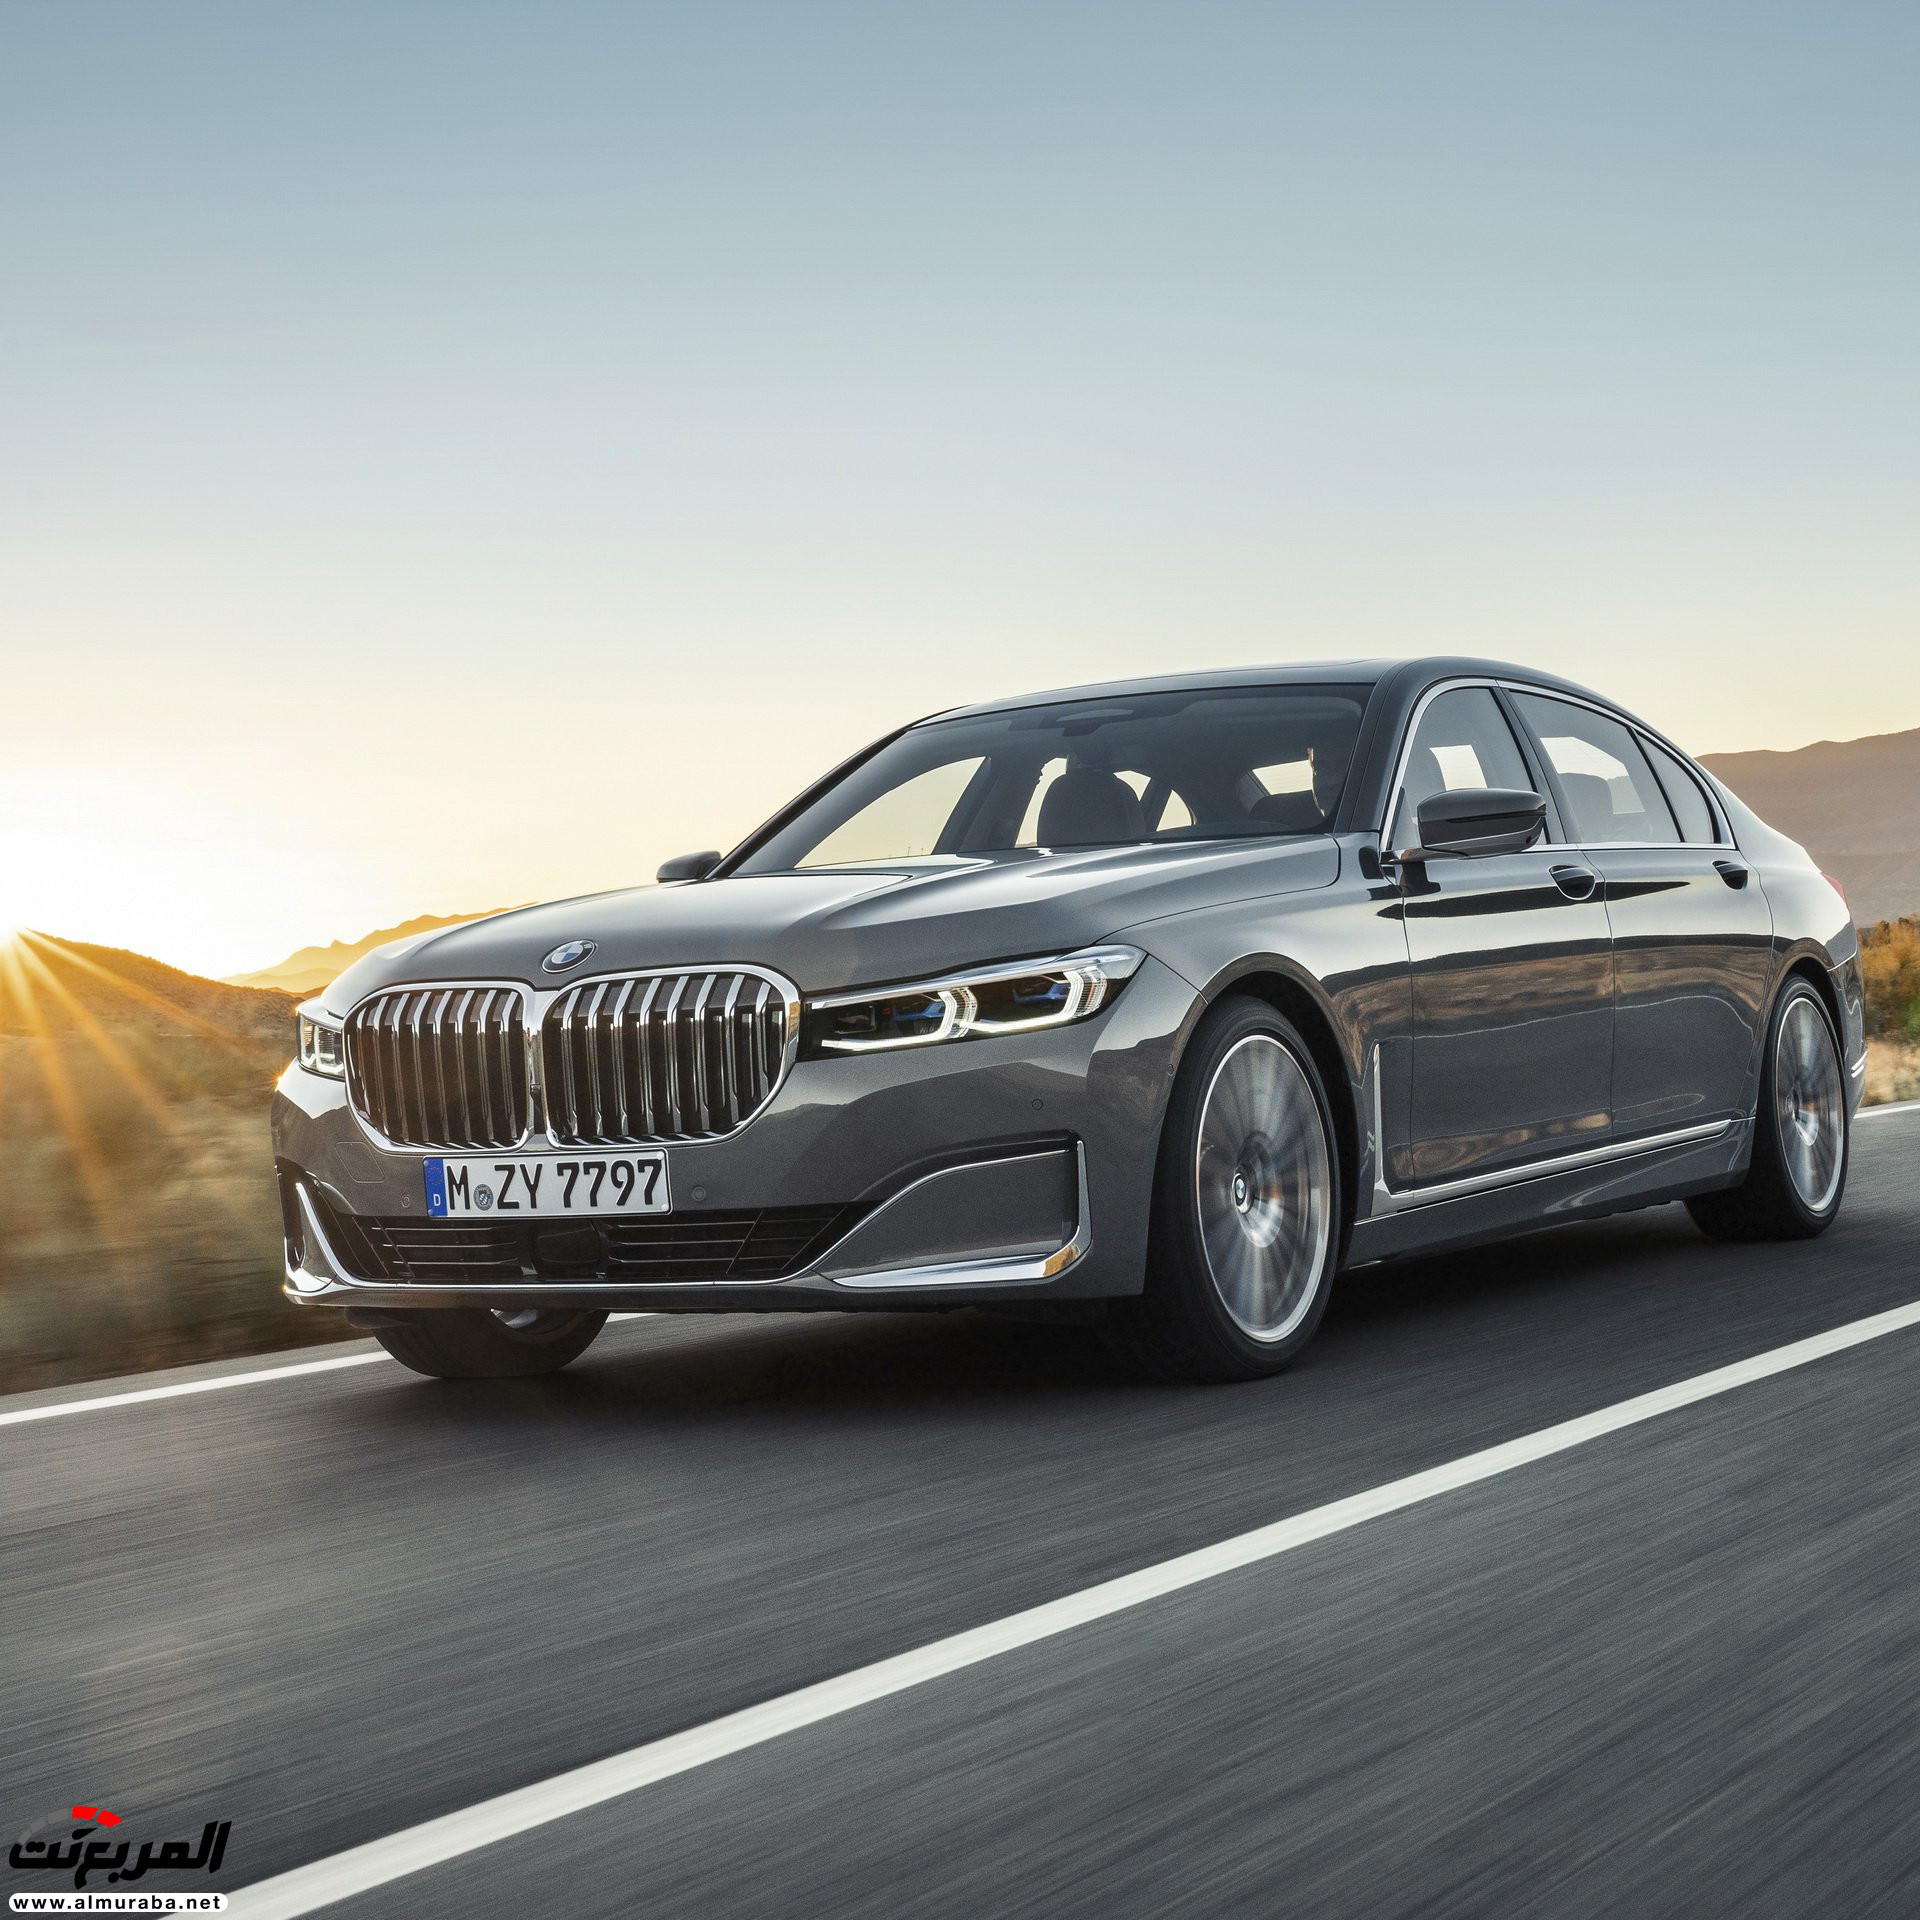 بي ام دبليو الفئة السابعة 2020 المحدثة تكشف نفسها رسمياً "صور ومواصفات" BMW 7 Series 266